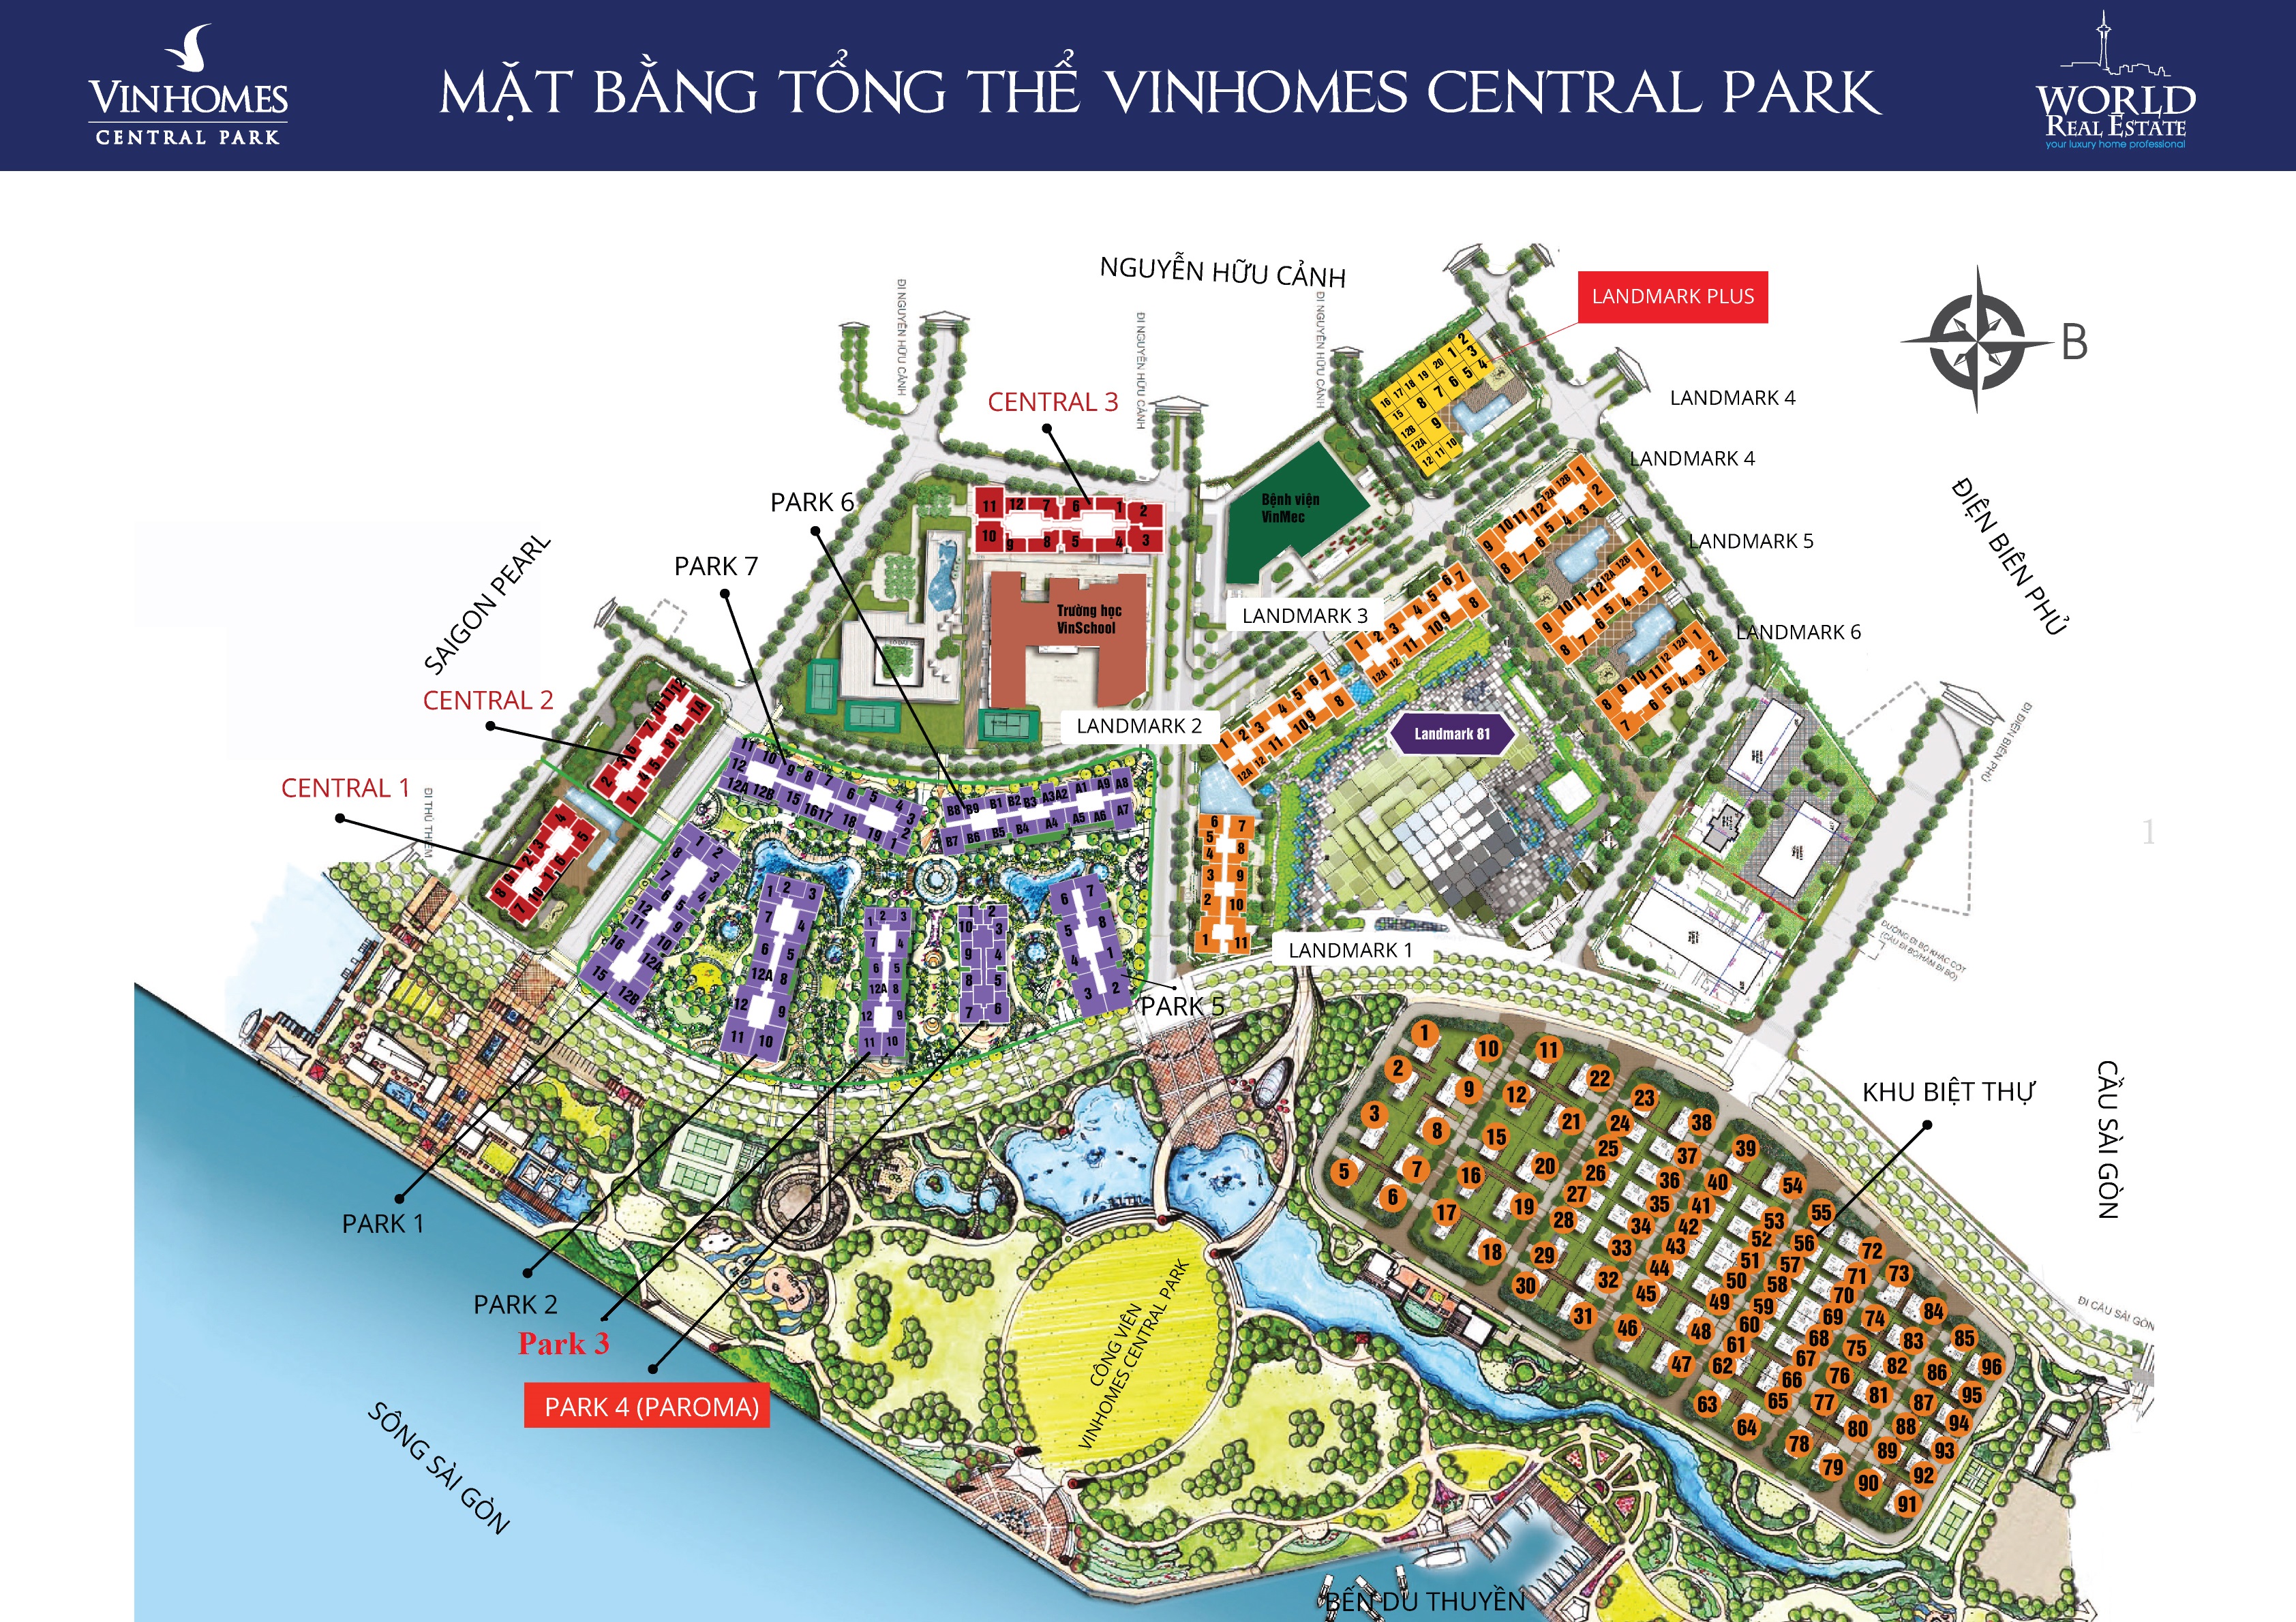 https://cdn.realtorvietnam.com/uploads/real_estate/mat-bang-tong-the-vinhomes-central-parkchuan_1489664510.jpg